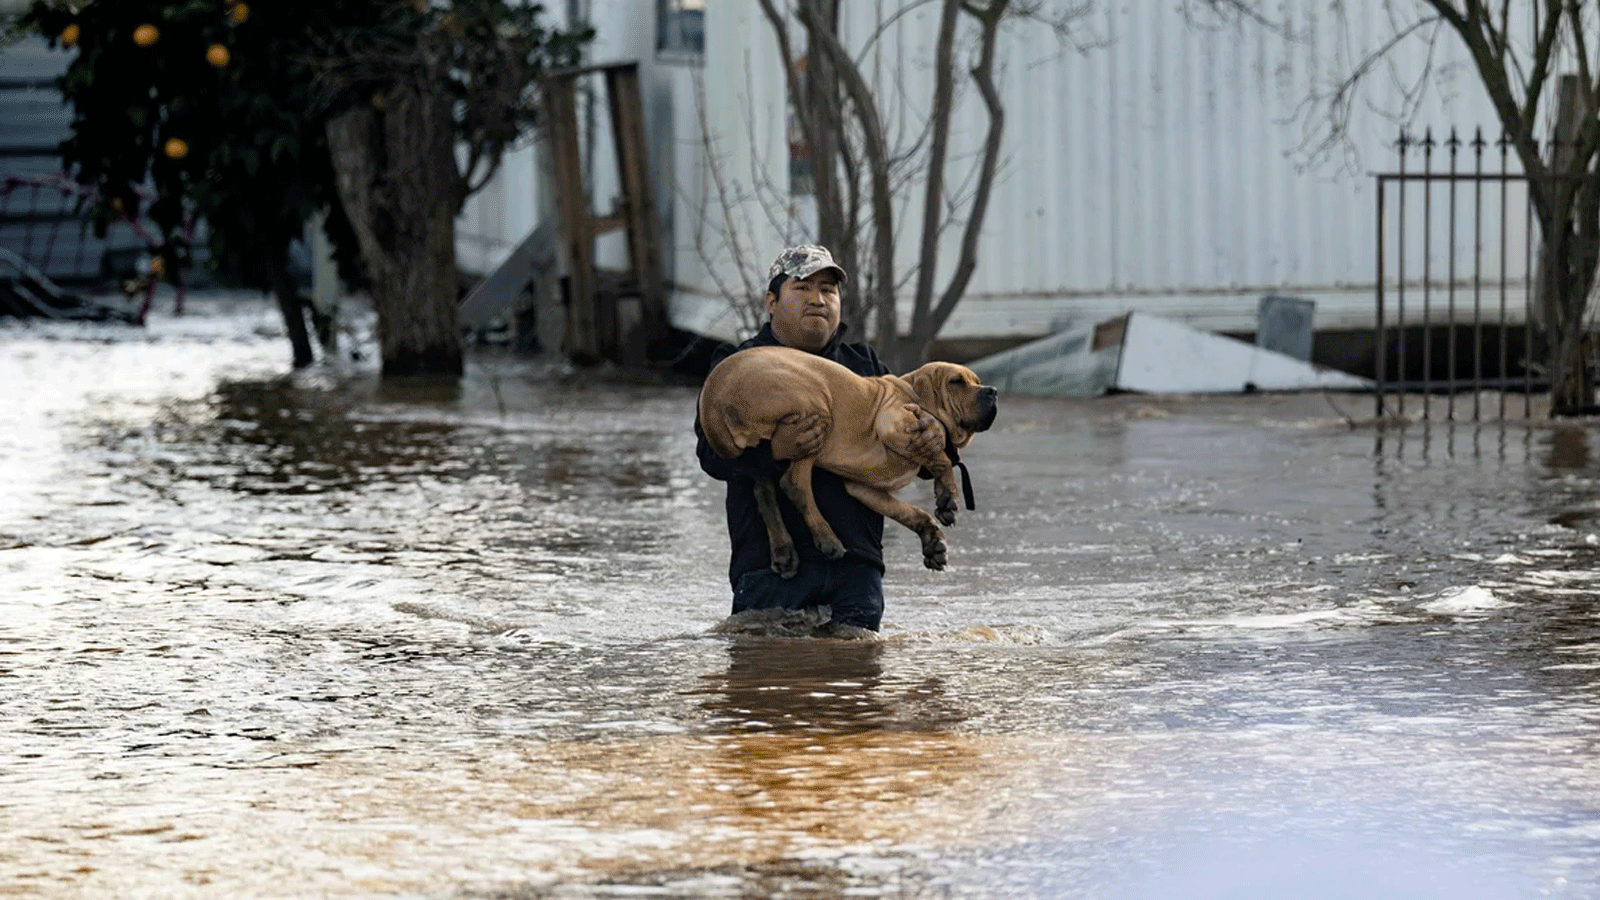 فيدل أوسوريو أحد السكان المحليين ينقِذ كلبًا من منزل غمرته المياه في ميرسيد، كاليفورنيا 